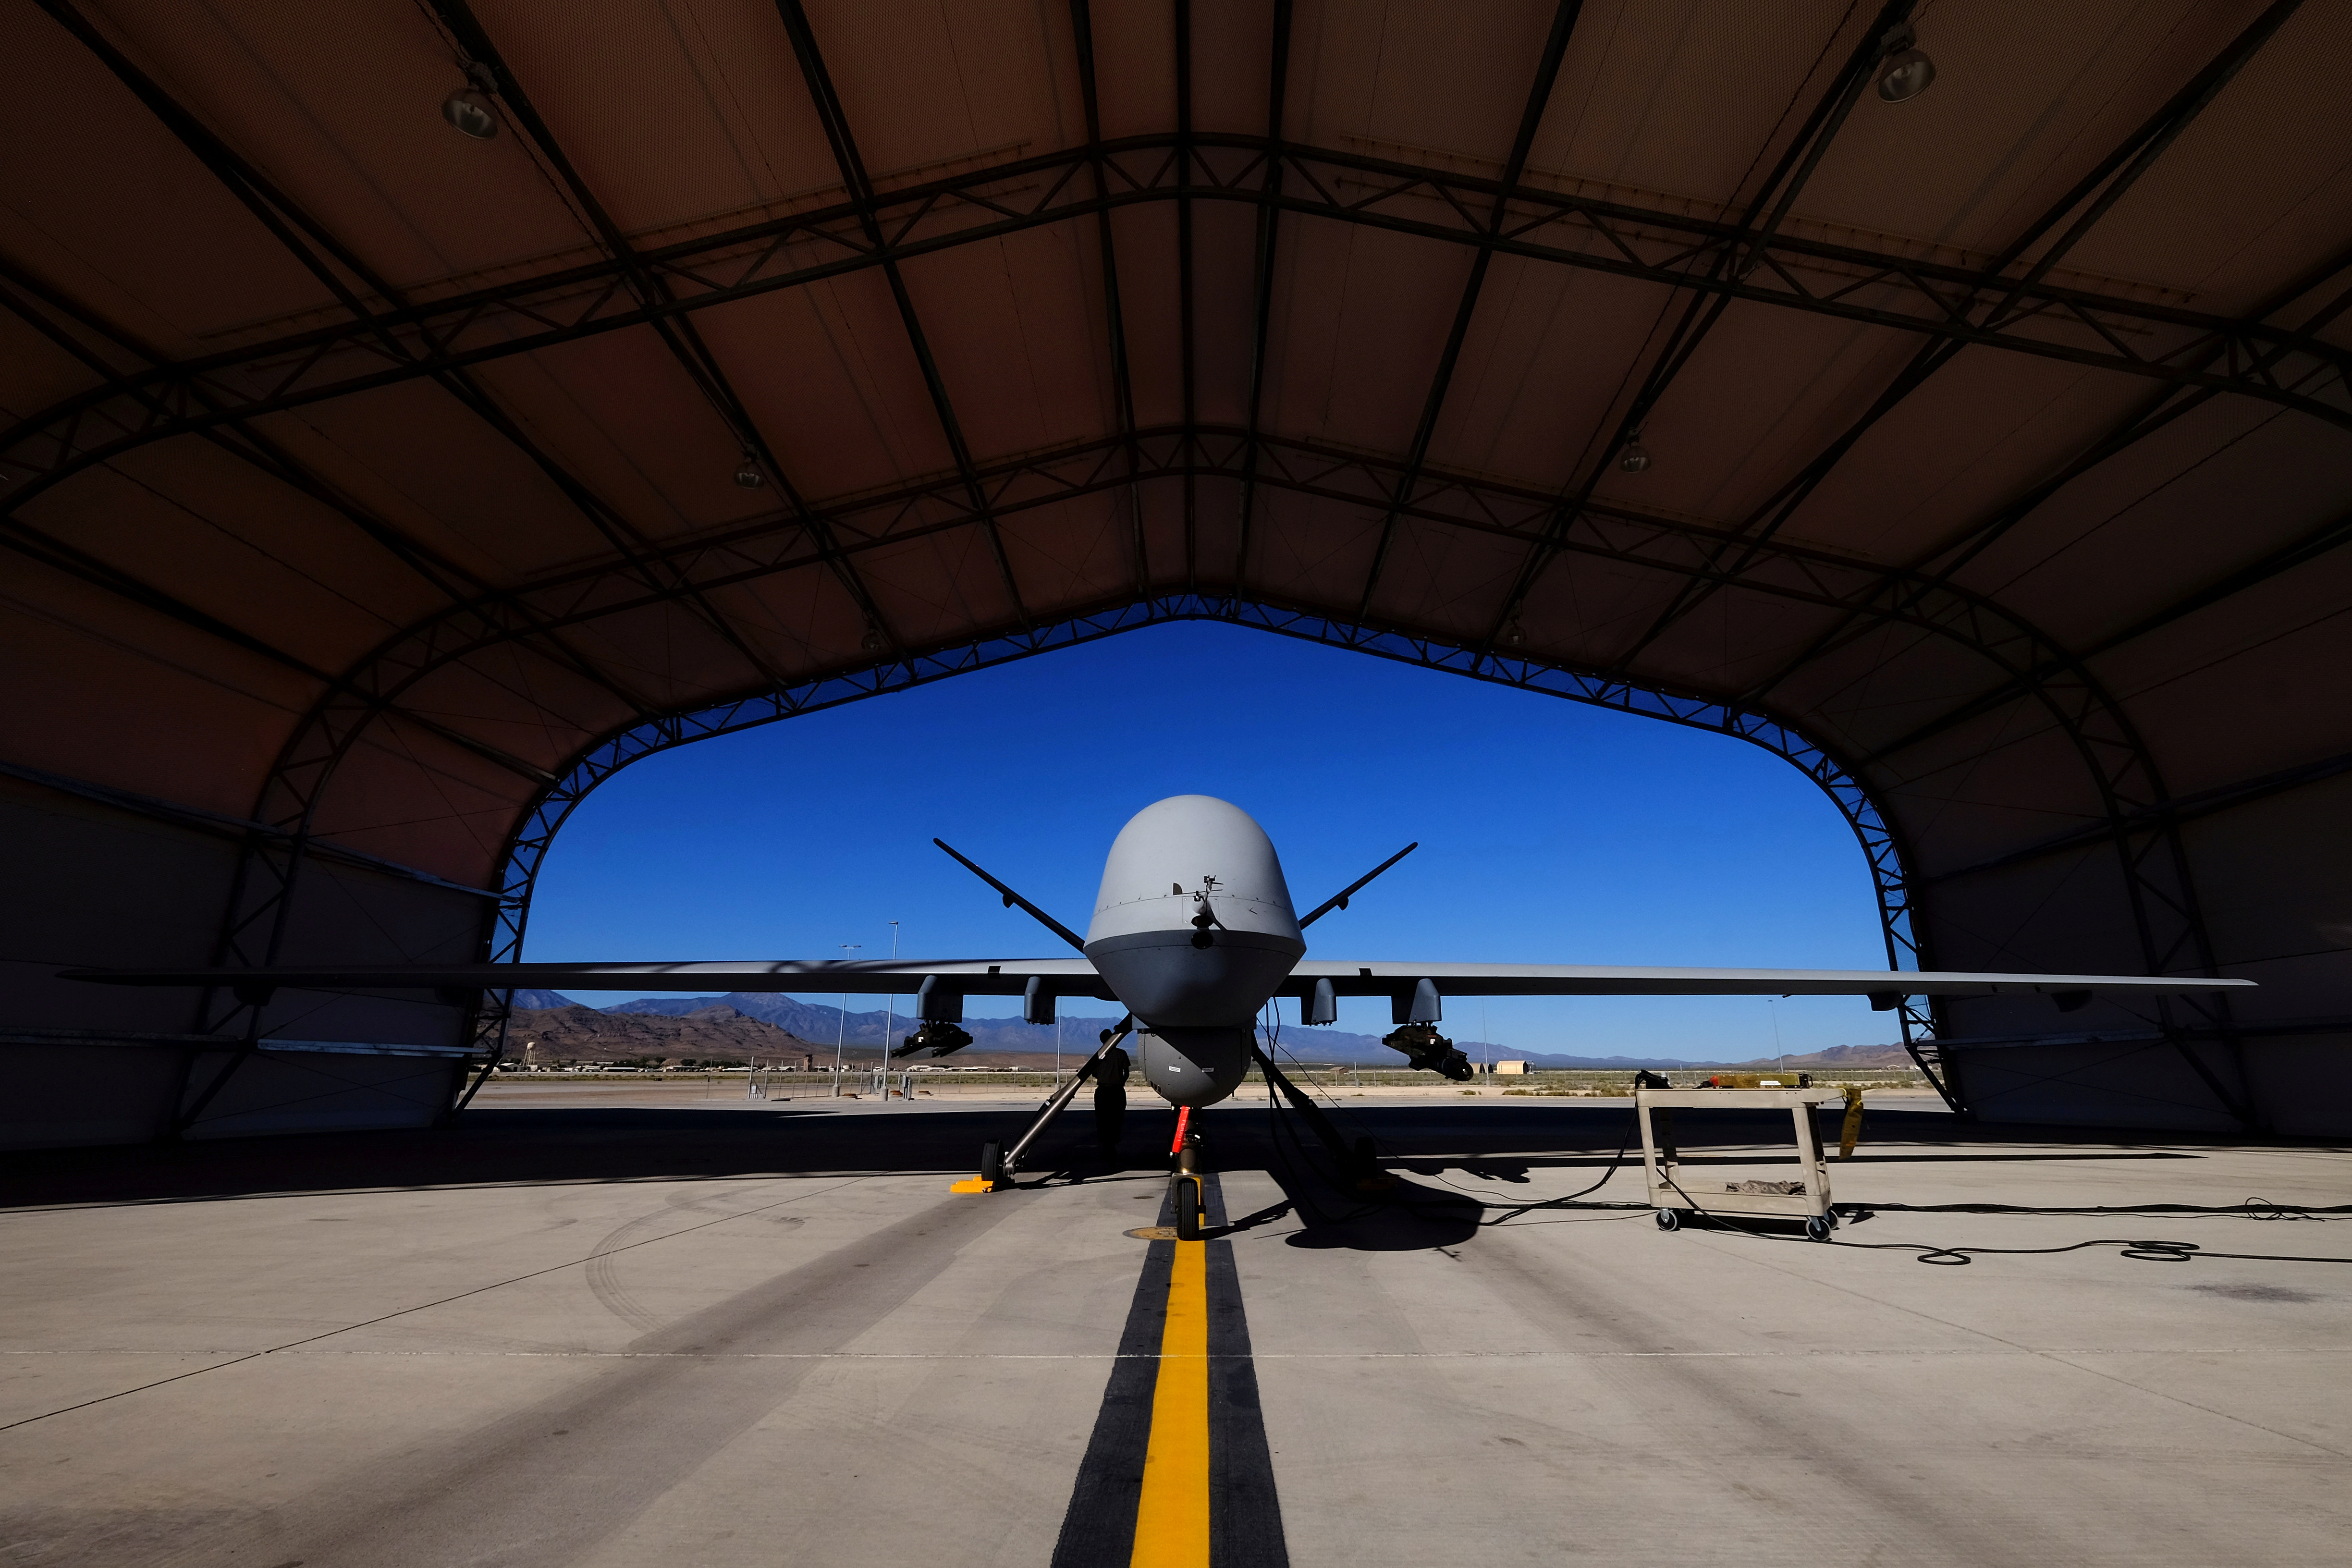 La verdad detrás de la historia que indicó que un drone controlado por Inteligencia Artificial mató a su operador durante una simulación 